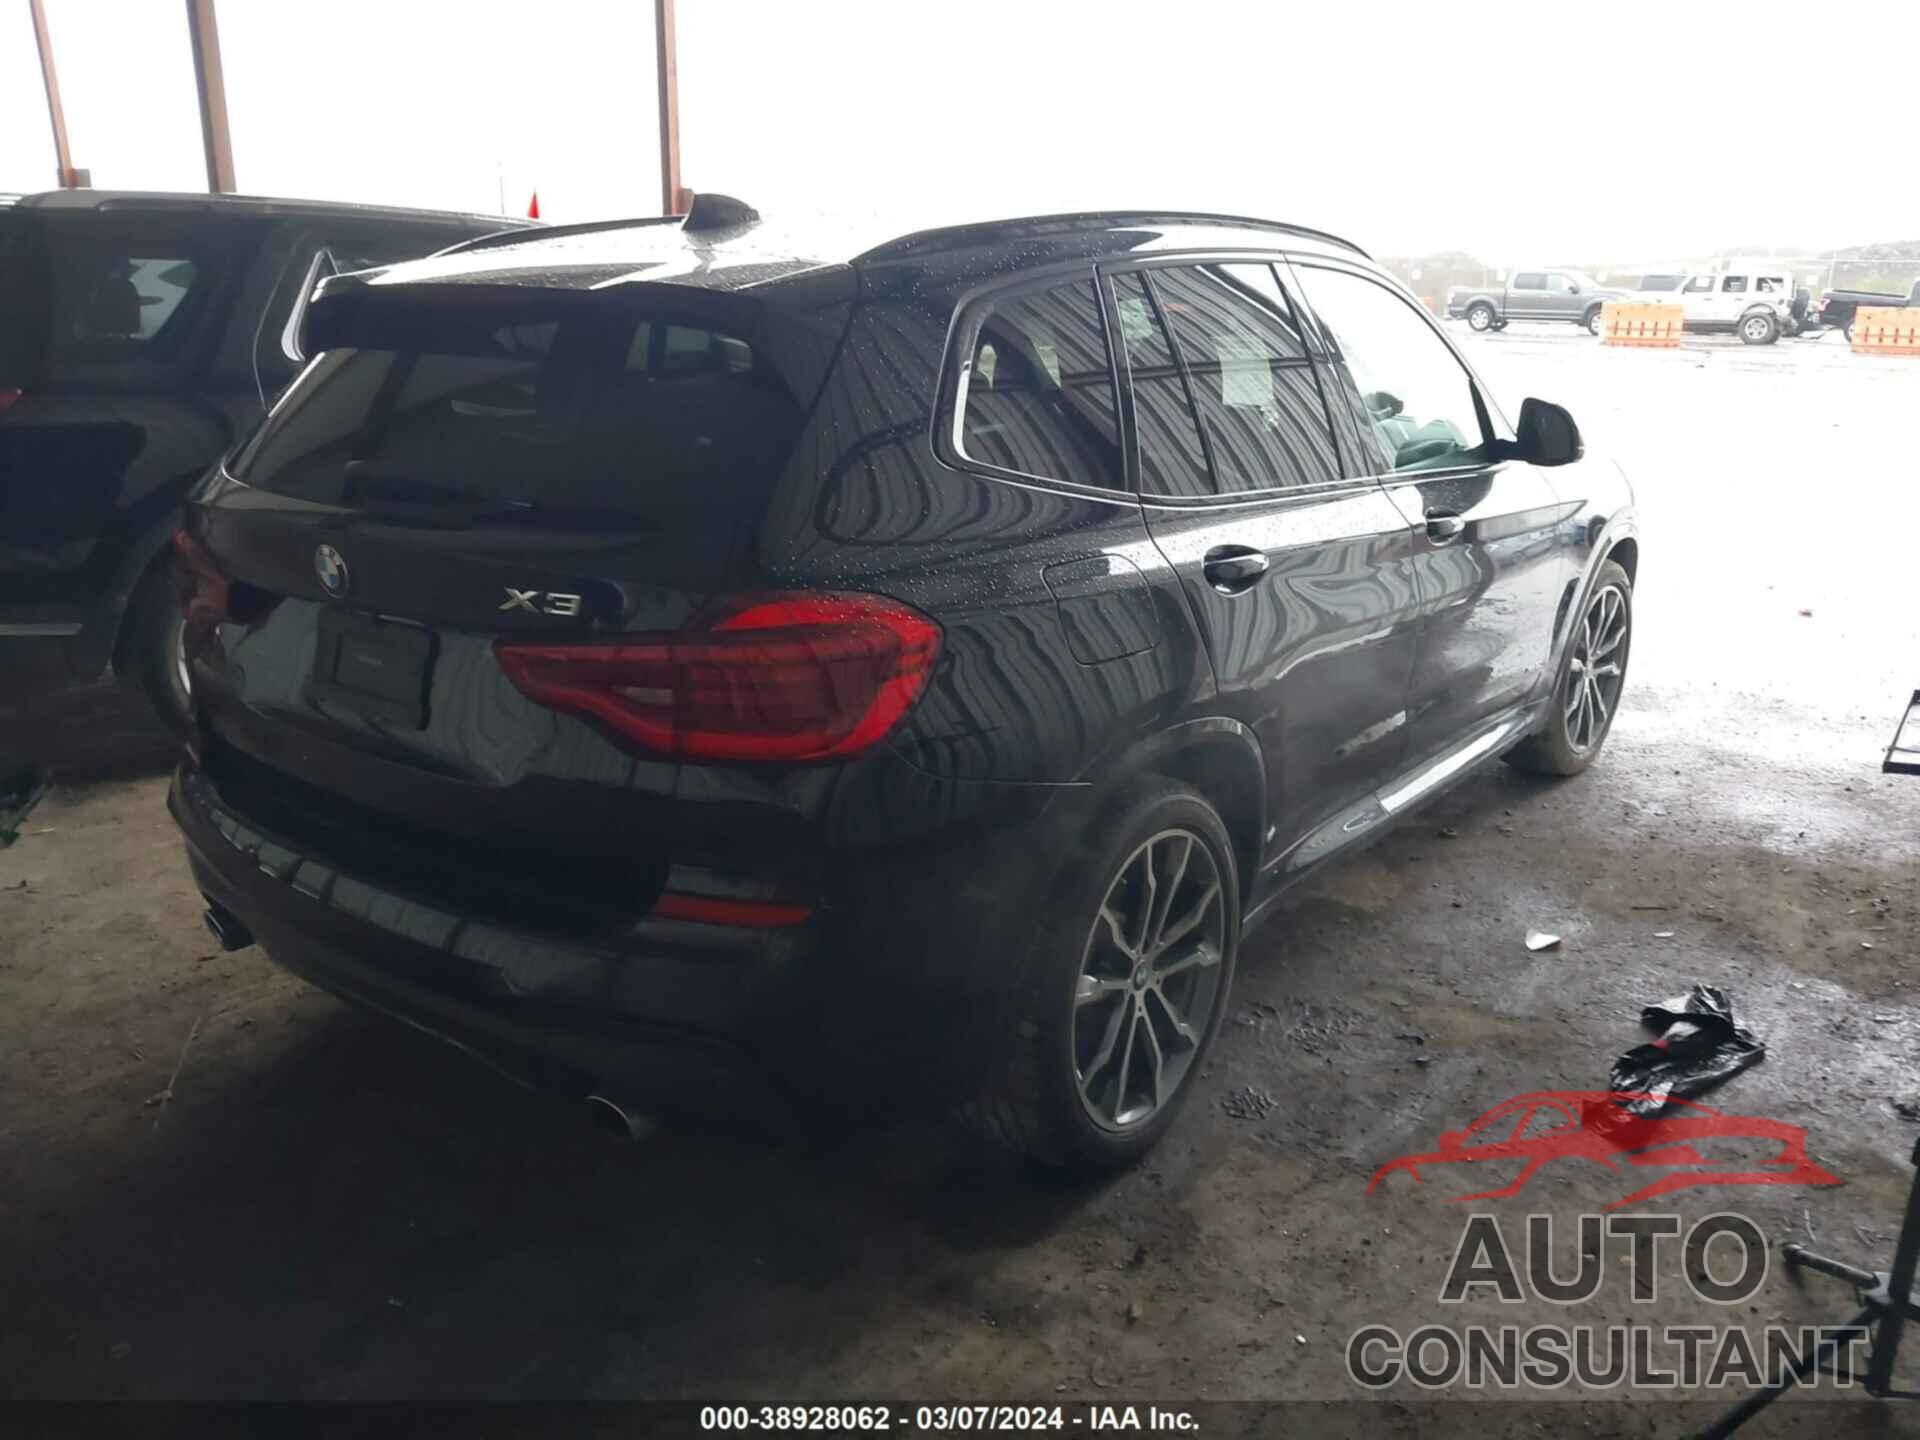 BMW X3 2018 - 5UXTR9C59JLC75334